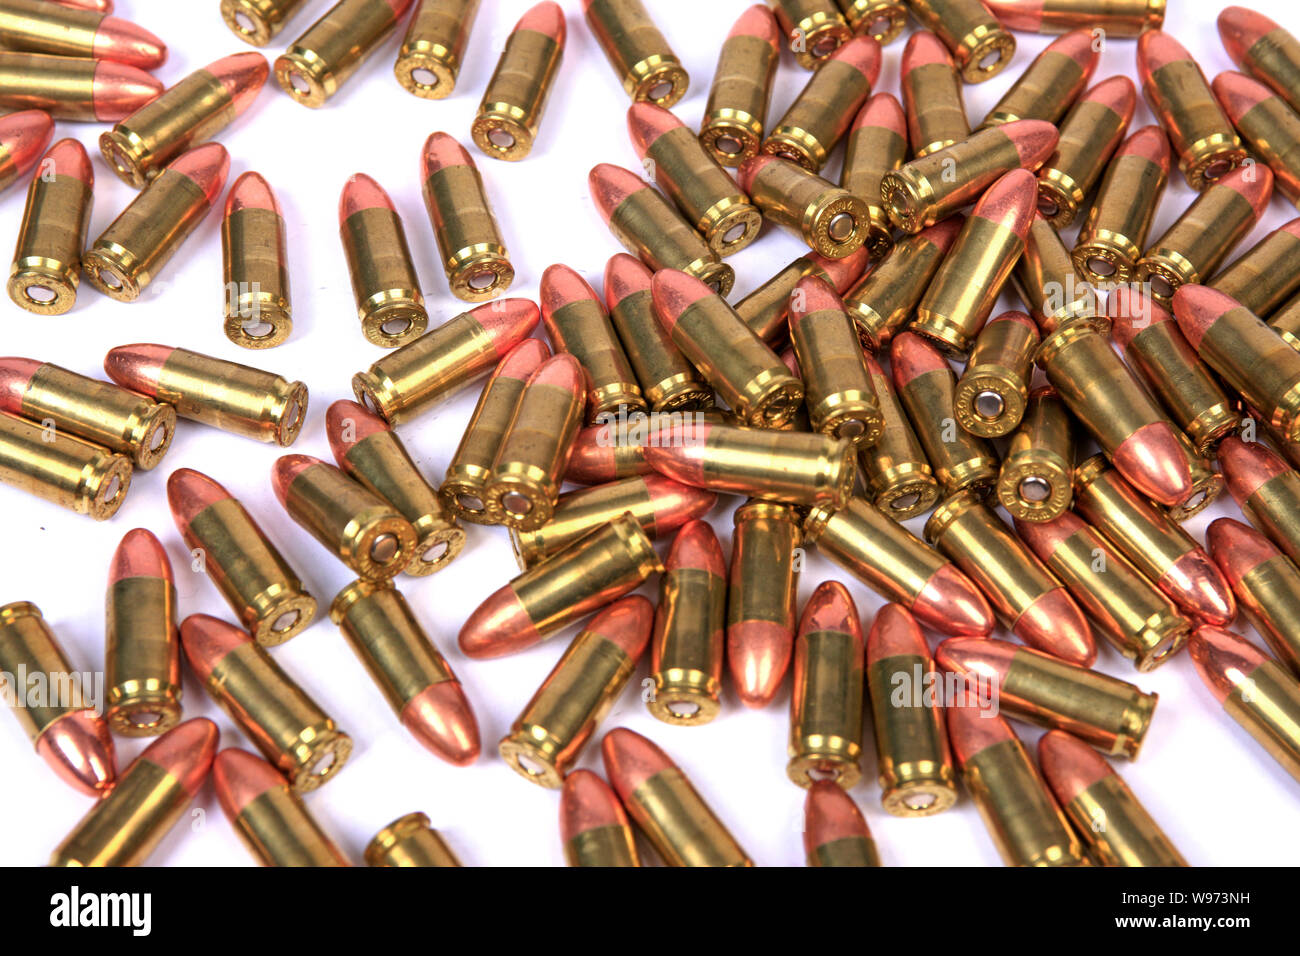 100 rondas de 9mm Luger ammuntion latón con puntas de cobre Foto de stock